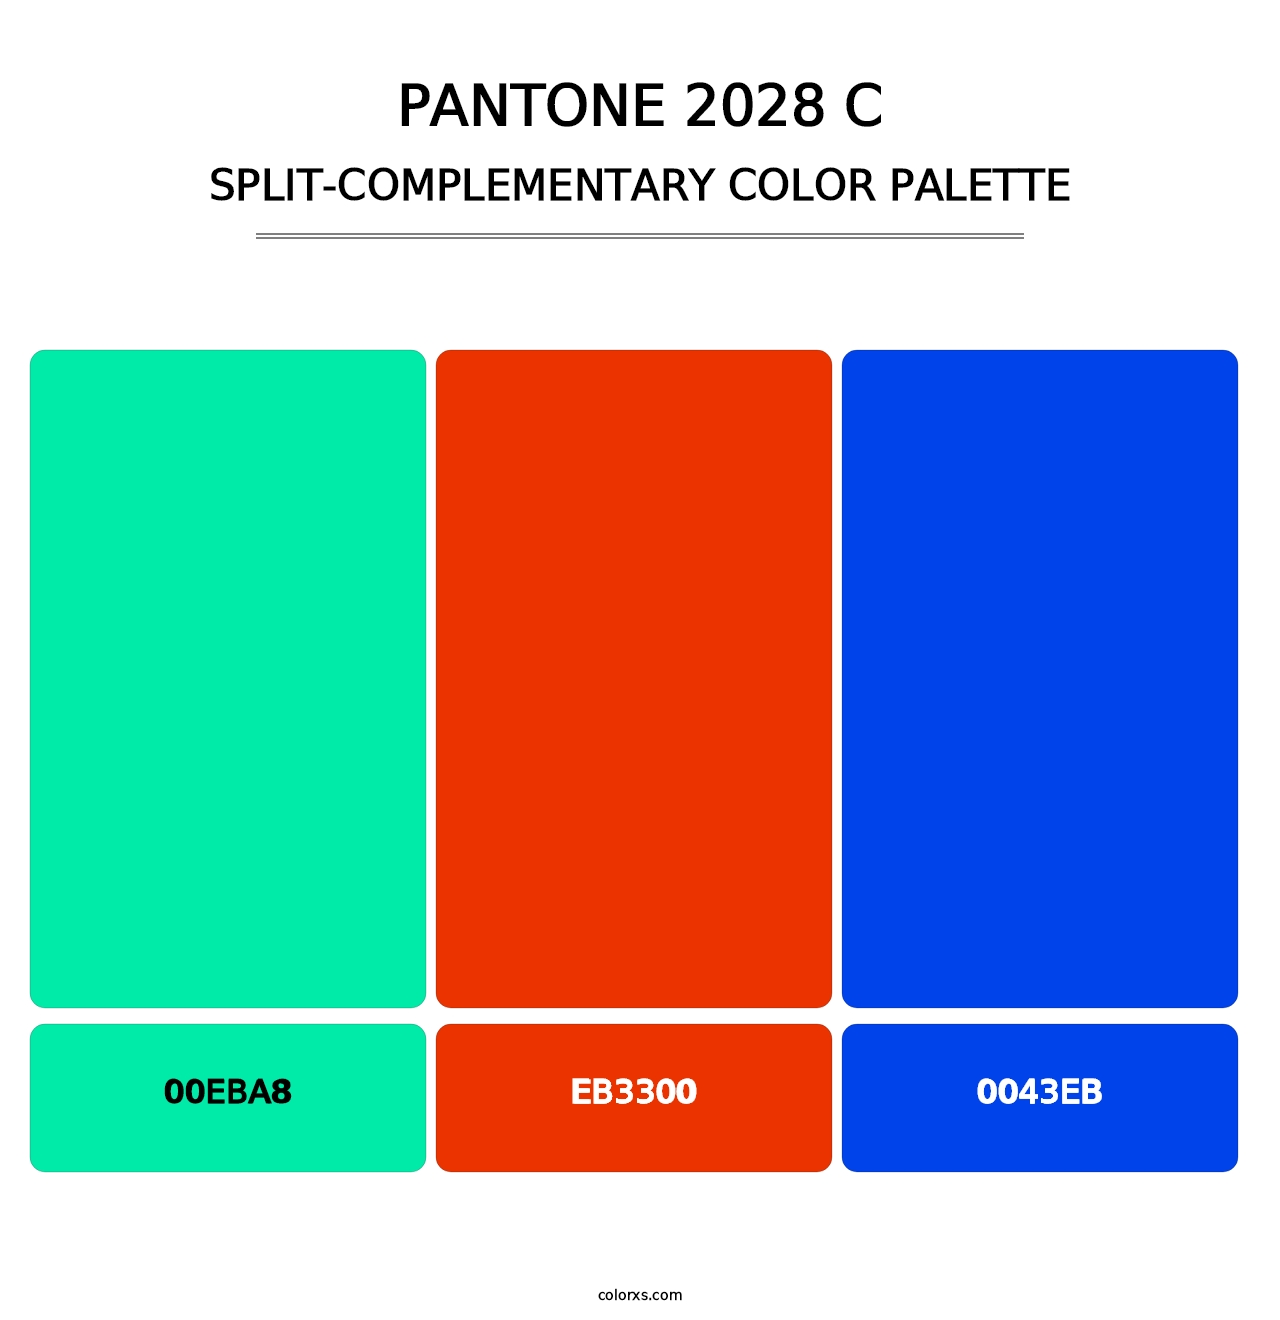 PANTONE 2028 C - Split-Complementary Color Palette